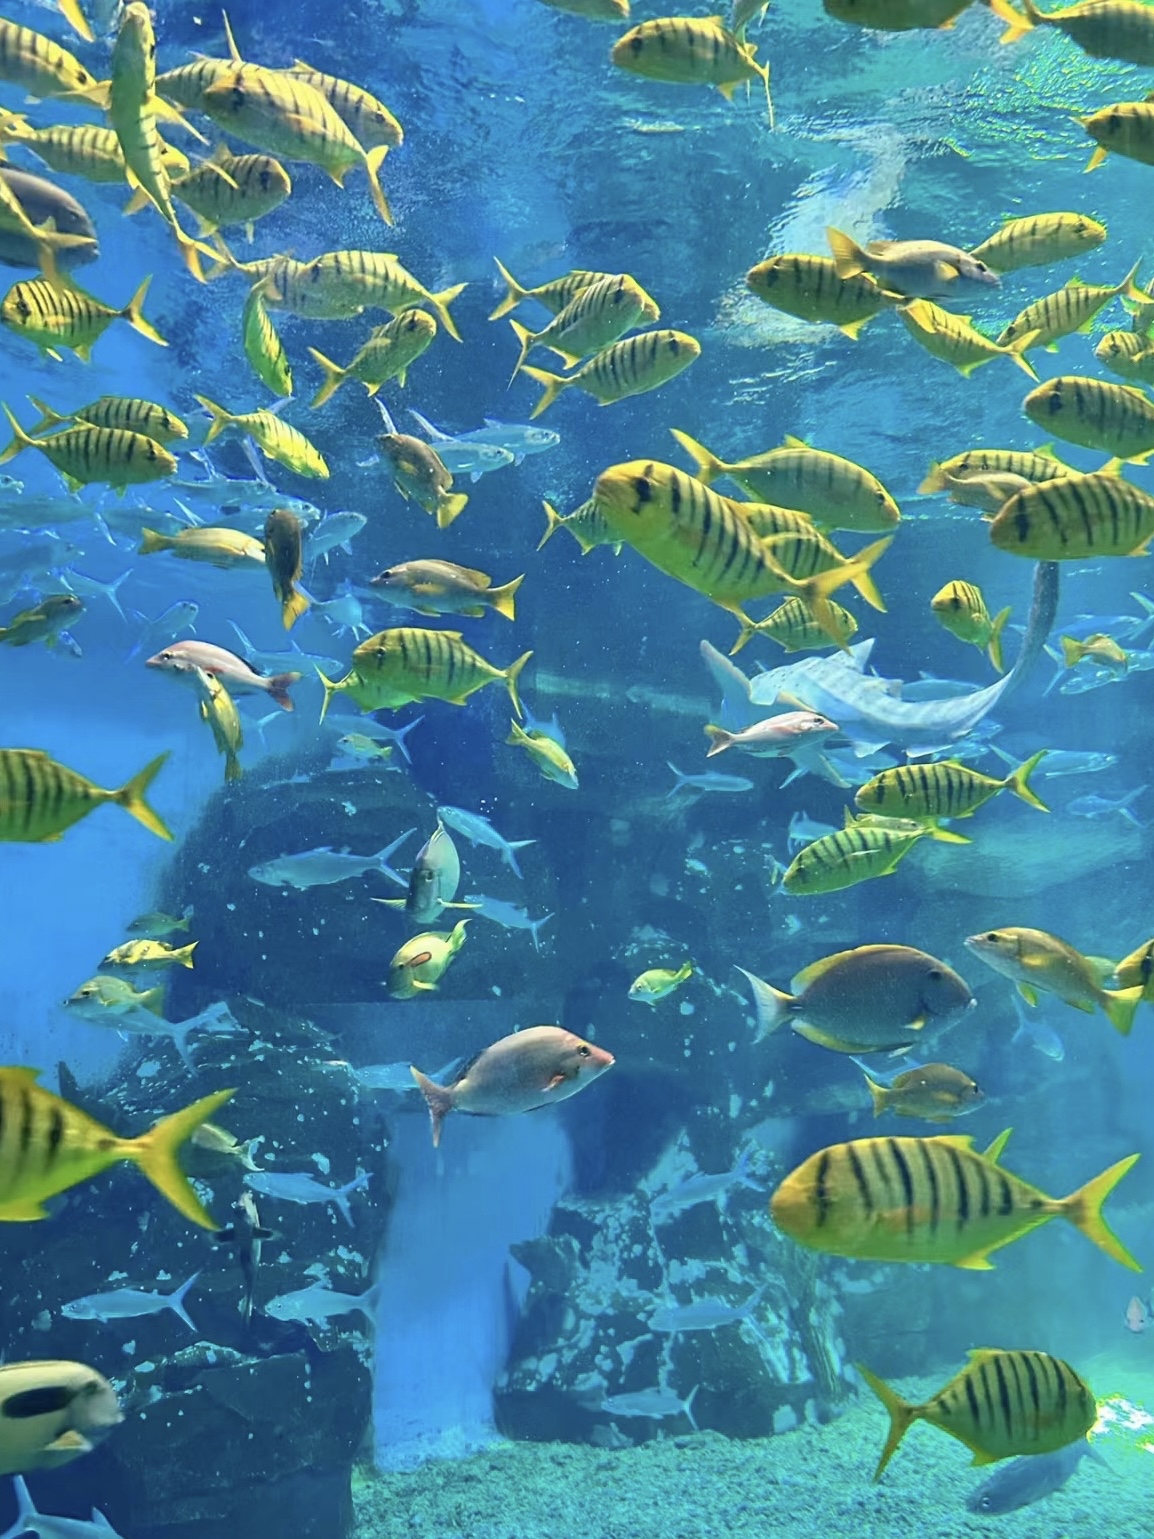 新西兰水族馆中全景玻璃360度感受蓝色大海